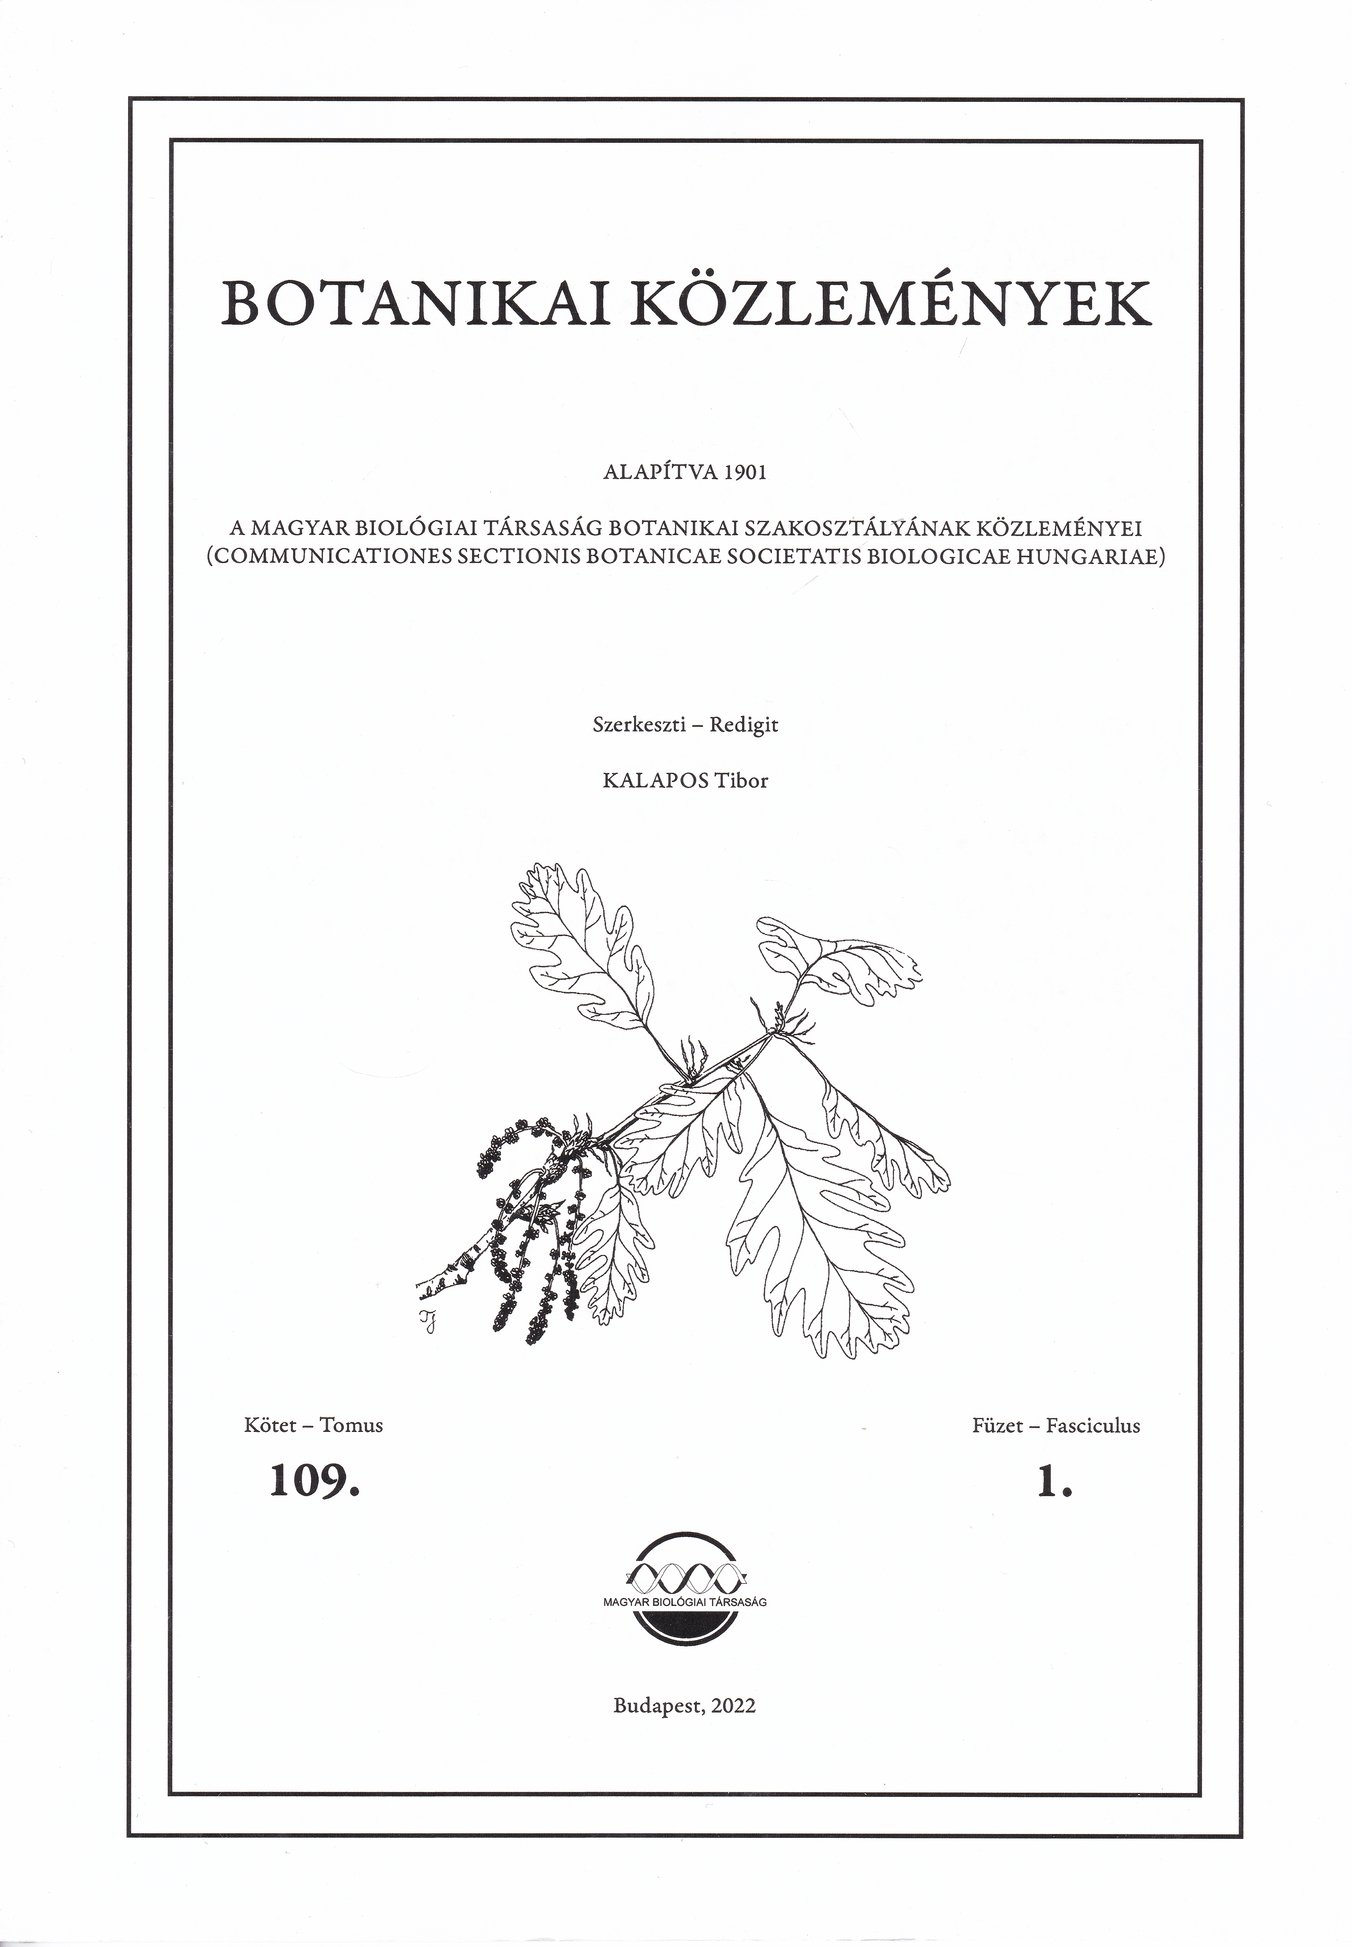 Botanikai Közlemények 2022/109. kötet 1. füzet (Rippl-Rónai Múzeum CC BY-NC-ND)